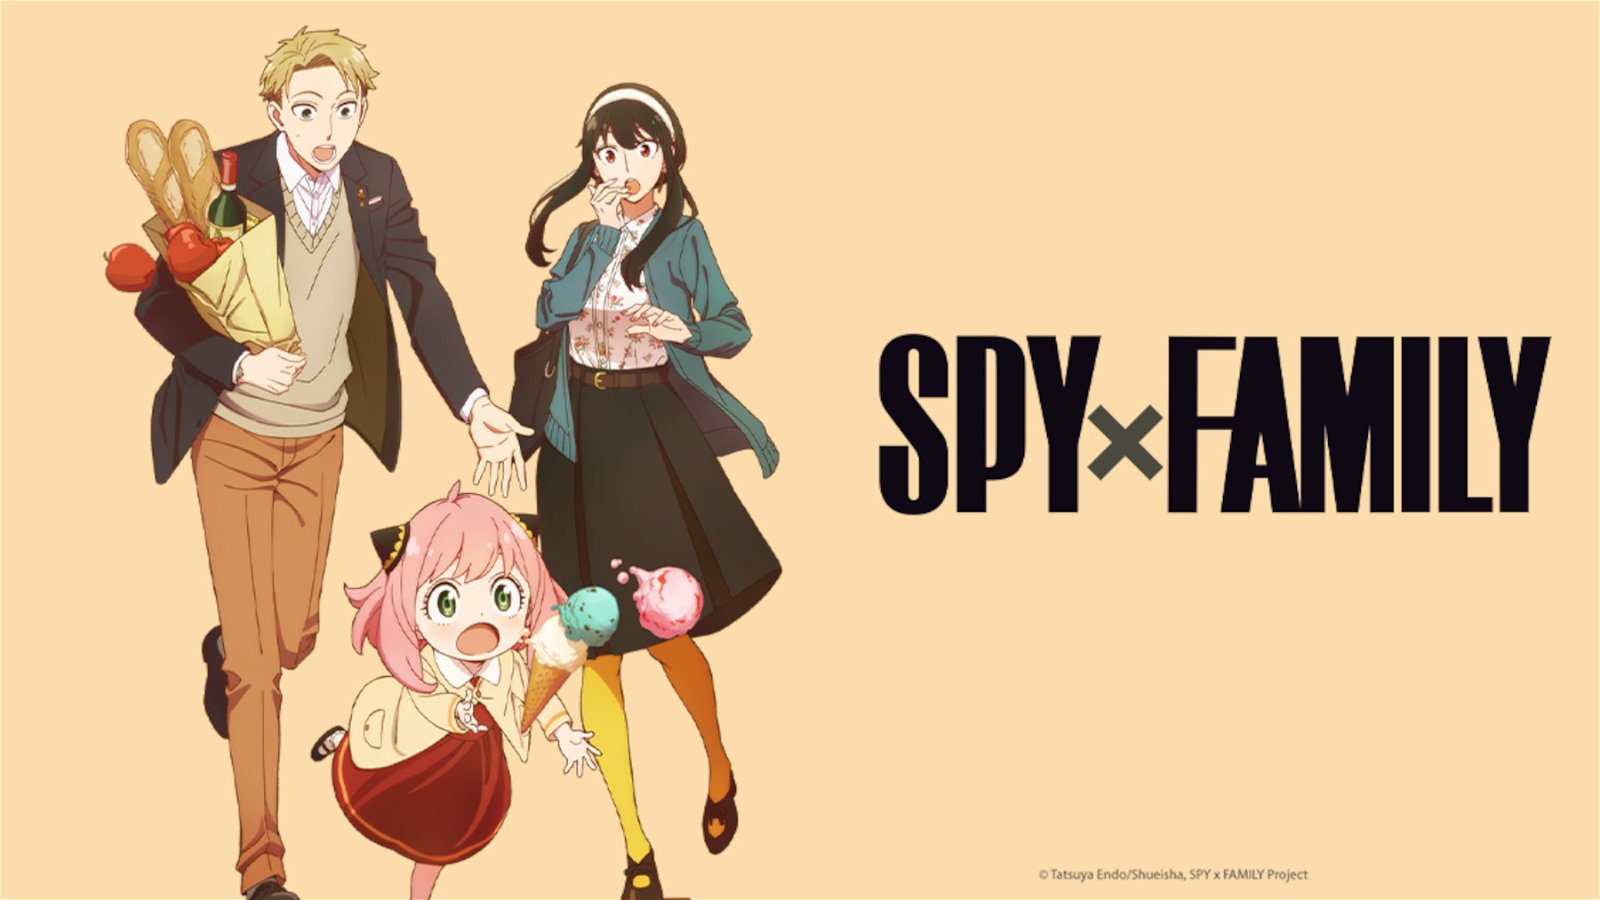 SPY x FAMILY' Season 2 Anime Film Release Dates